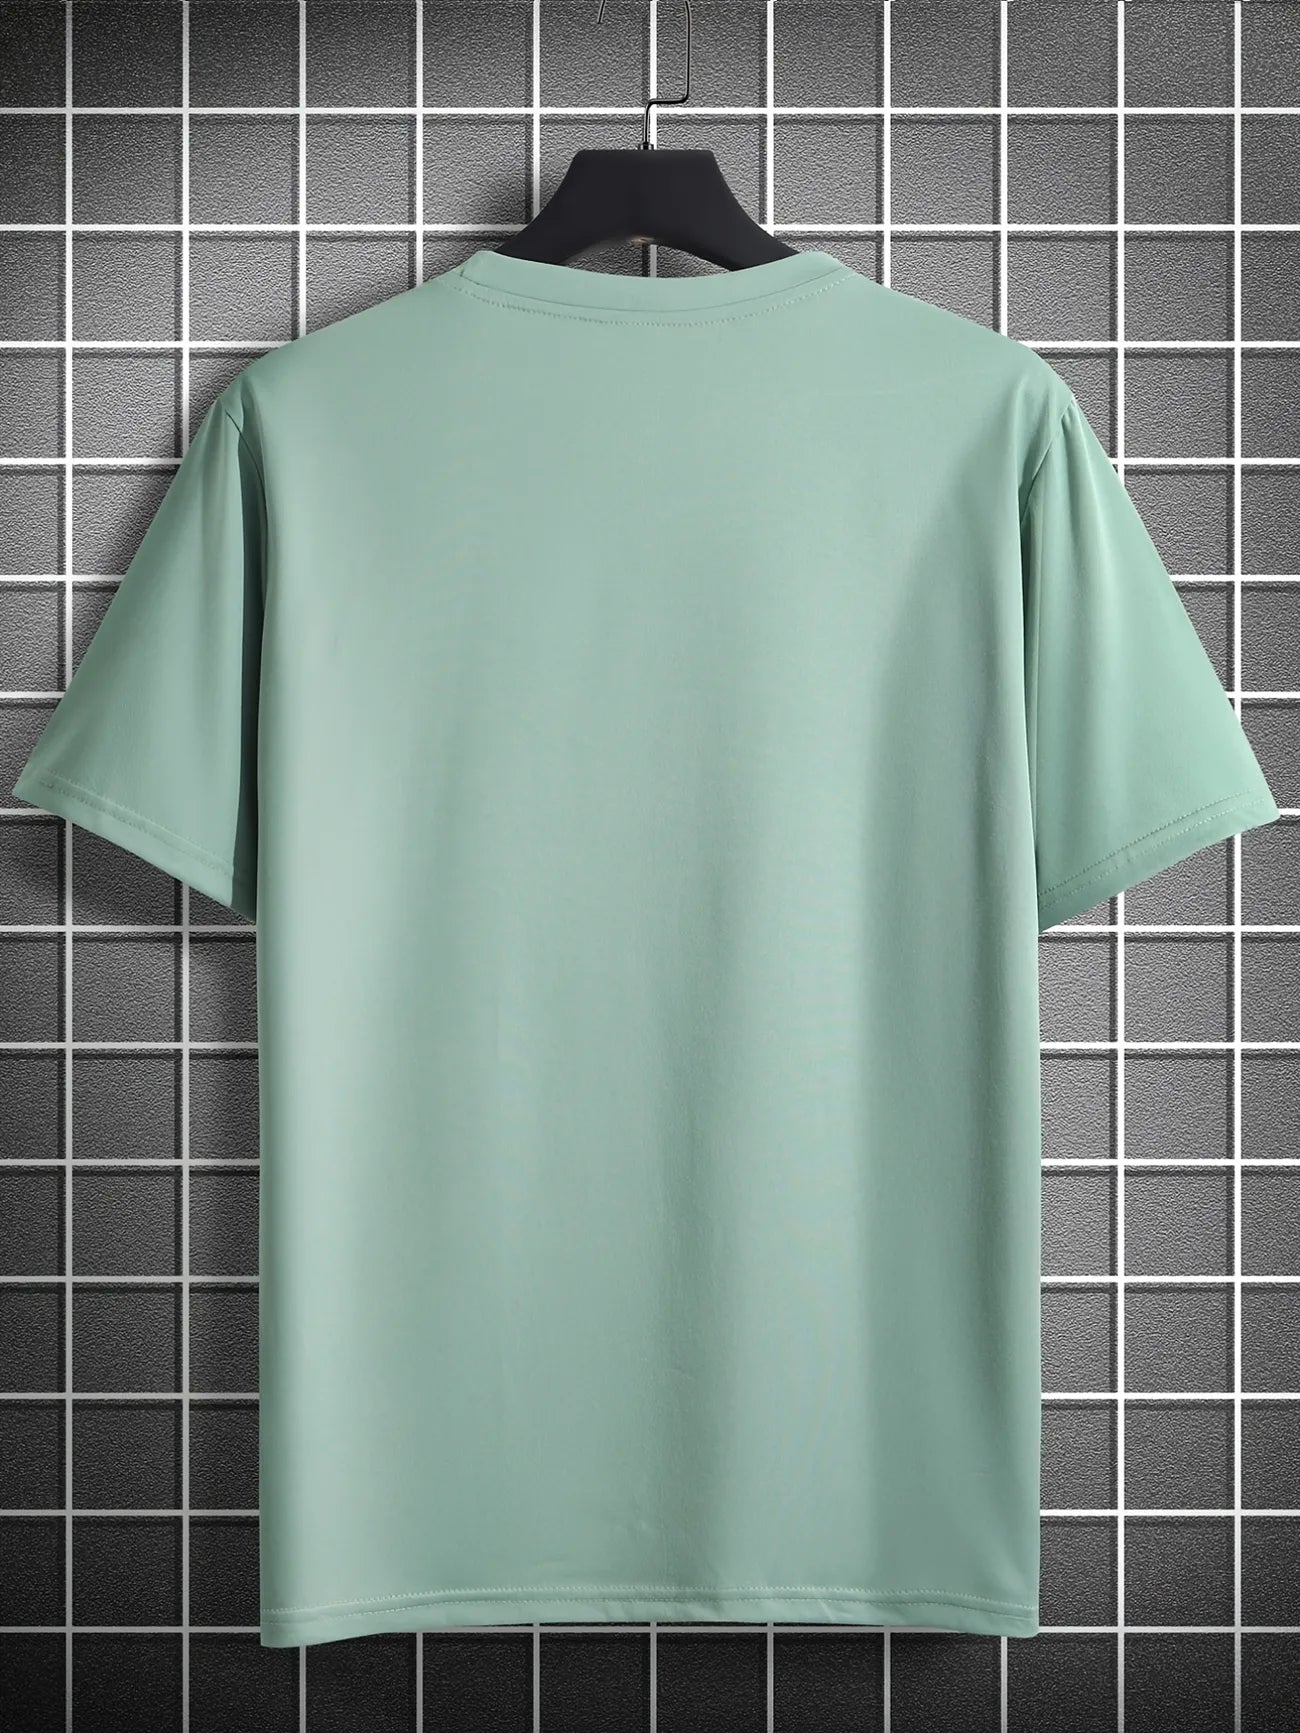 Mens Cotton Sticker Printed T-Shirt TTMPS98 - Mint Green